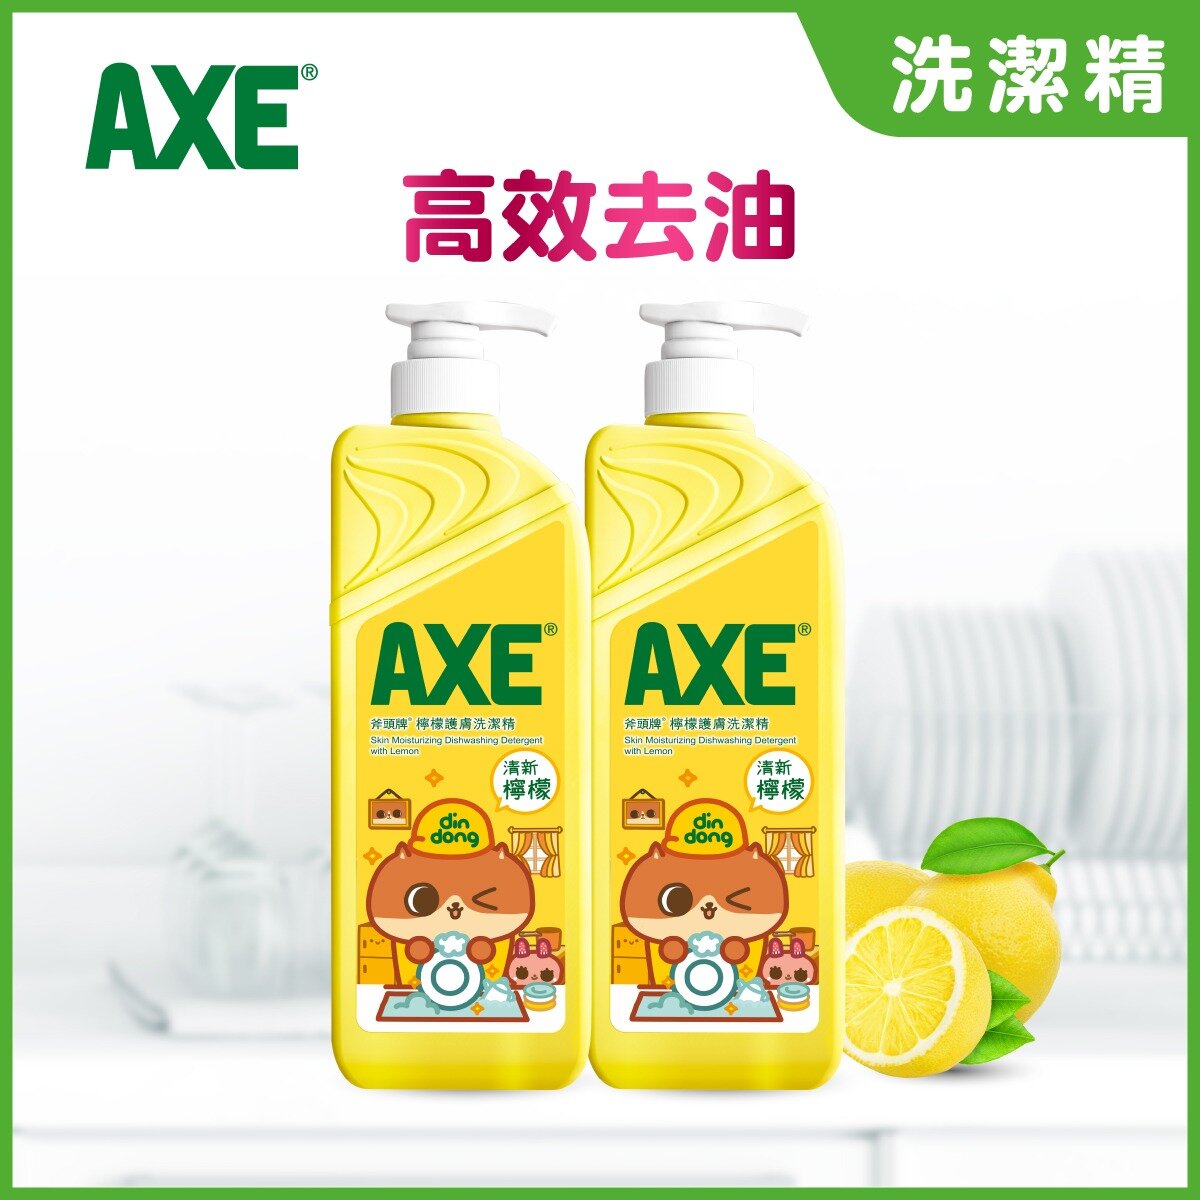 斧頭牌| 檸檬護膚洗潔精(泵裝)(新舊包裝隨機發放) | Hktvmall 香港最大網購平台